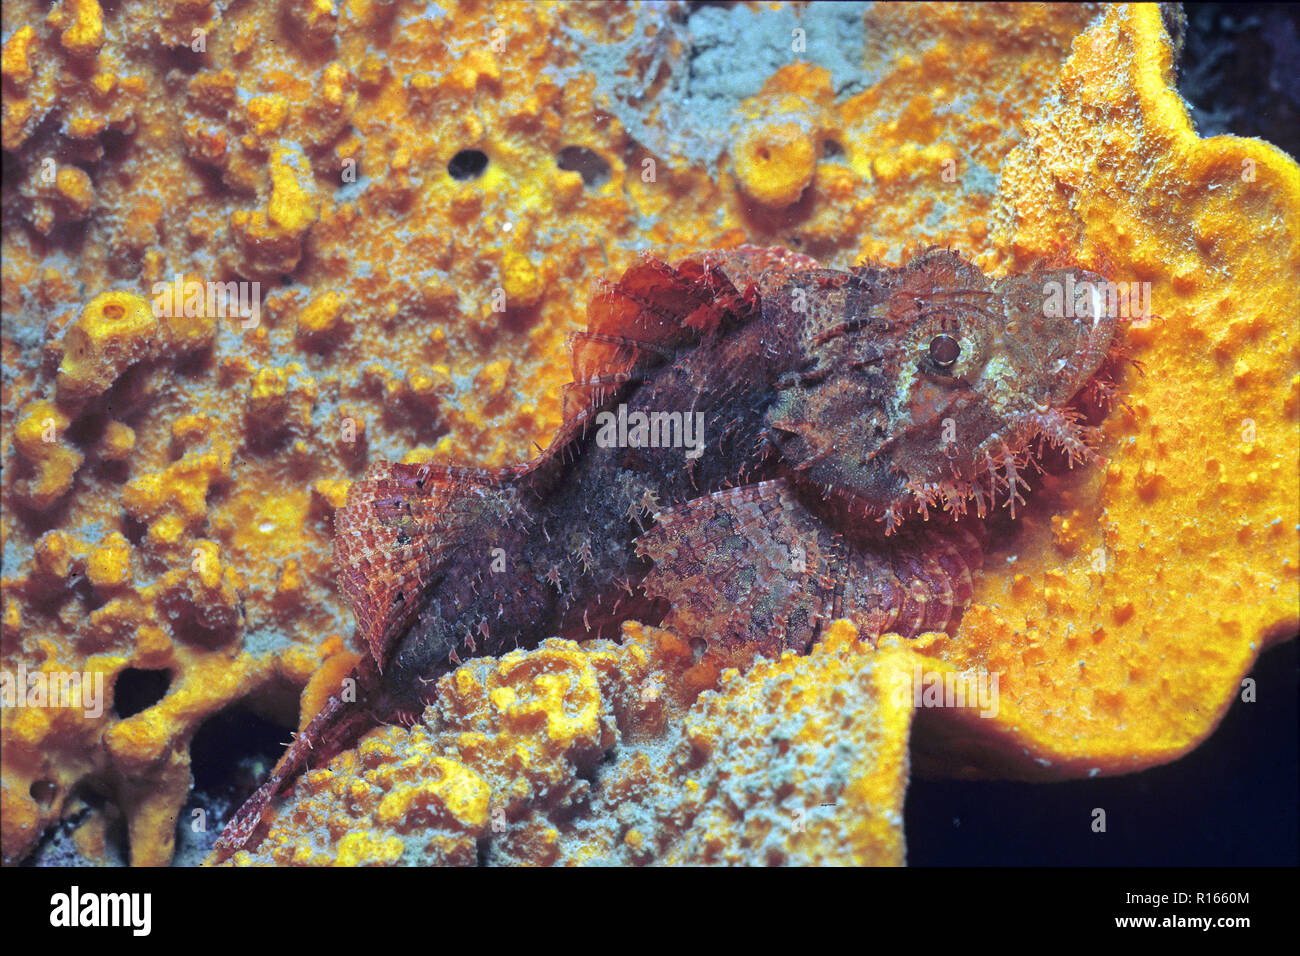 Tassled scorpionfish (Scorpaenopsis oxycephala), portant sur un corail, Bali, Indonésie Banque D'Images